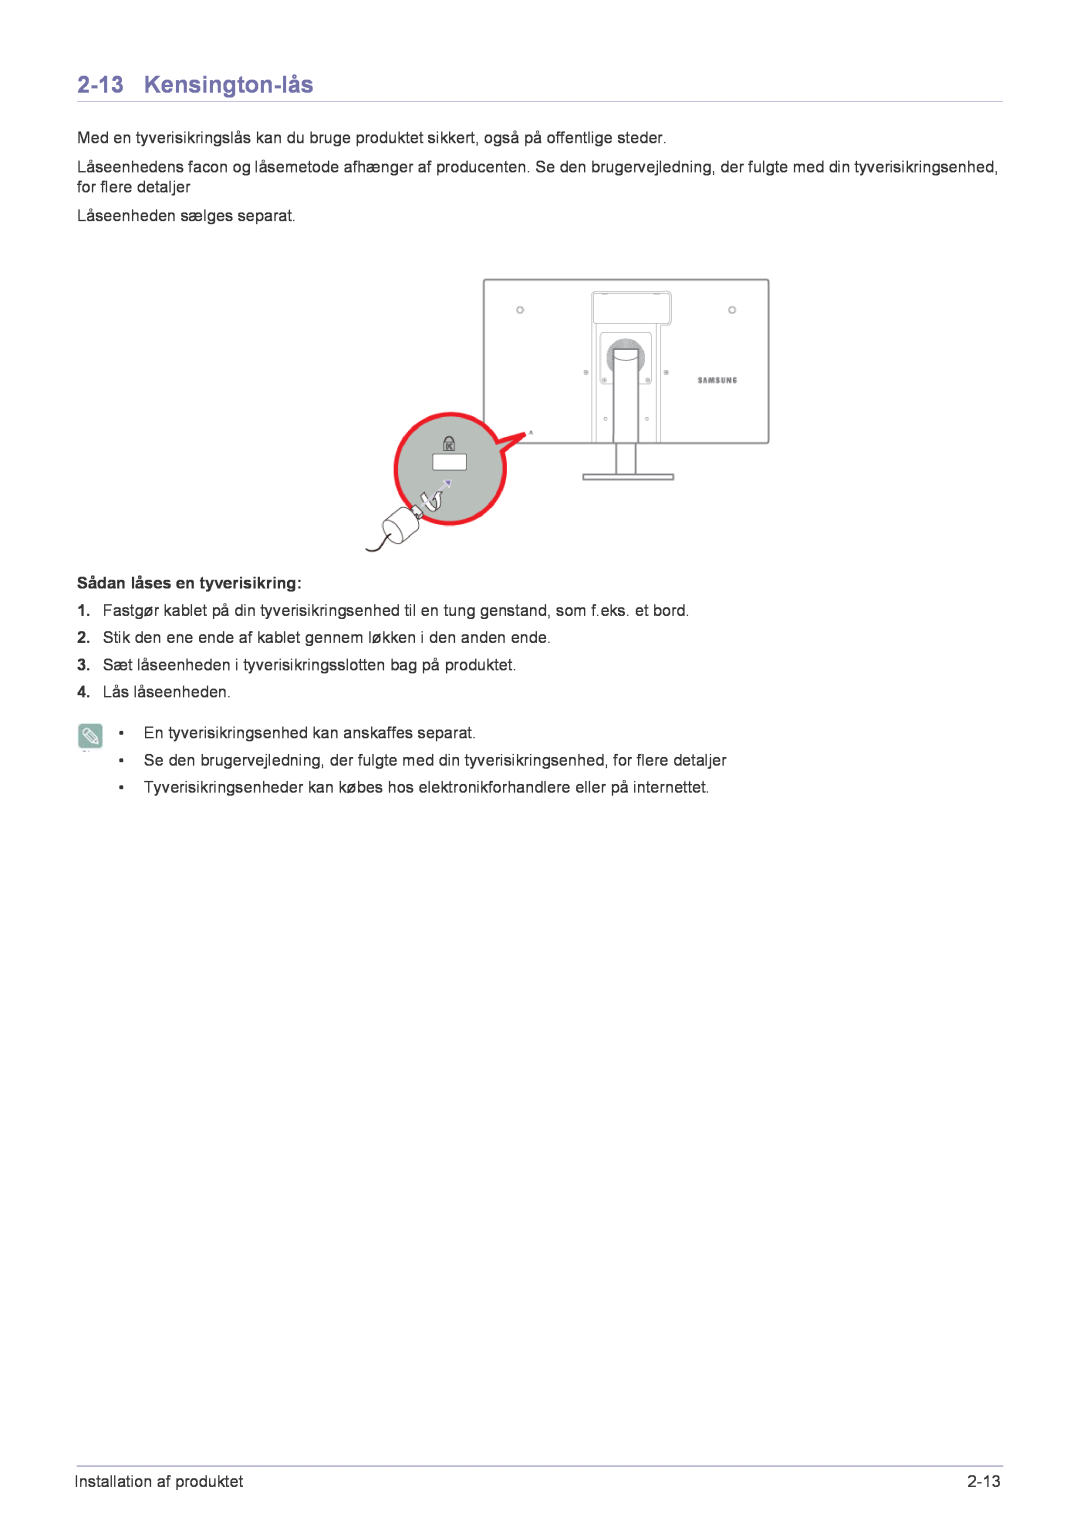 Samsung LF22NPBHBNP/EN manual Kensington-lås, Sådan låses en tyverisikring 